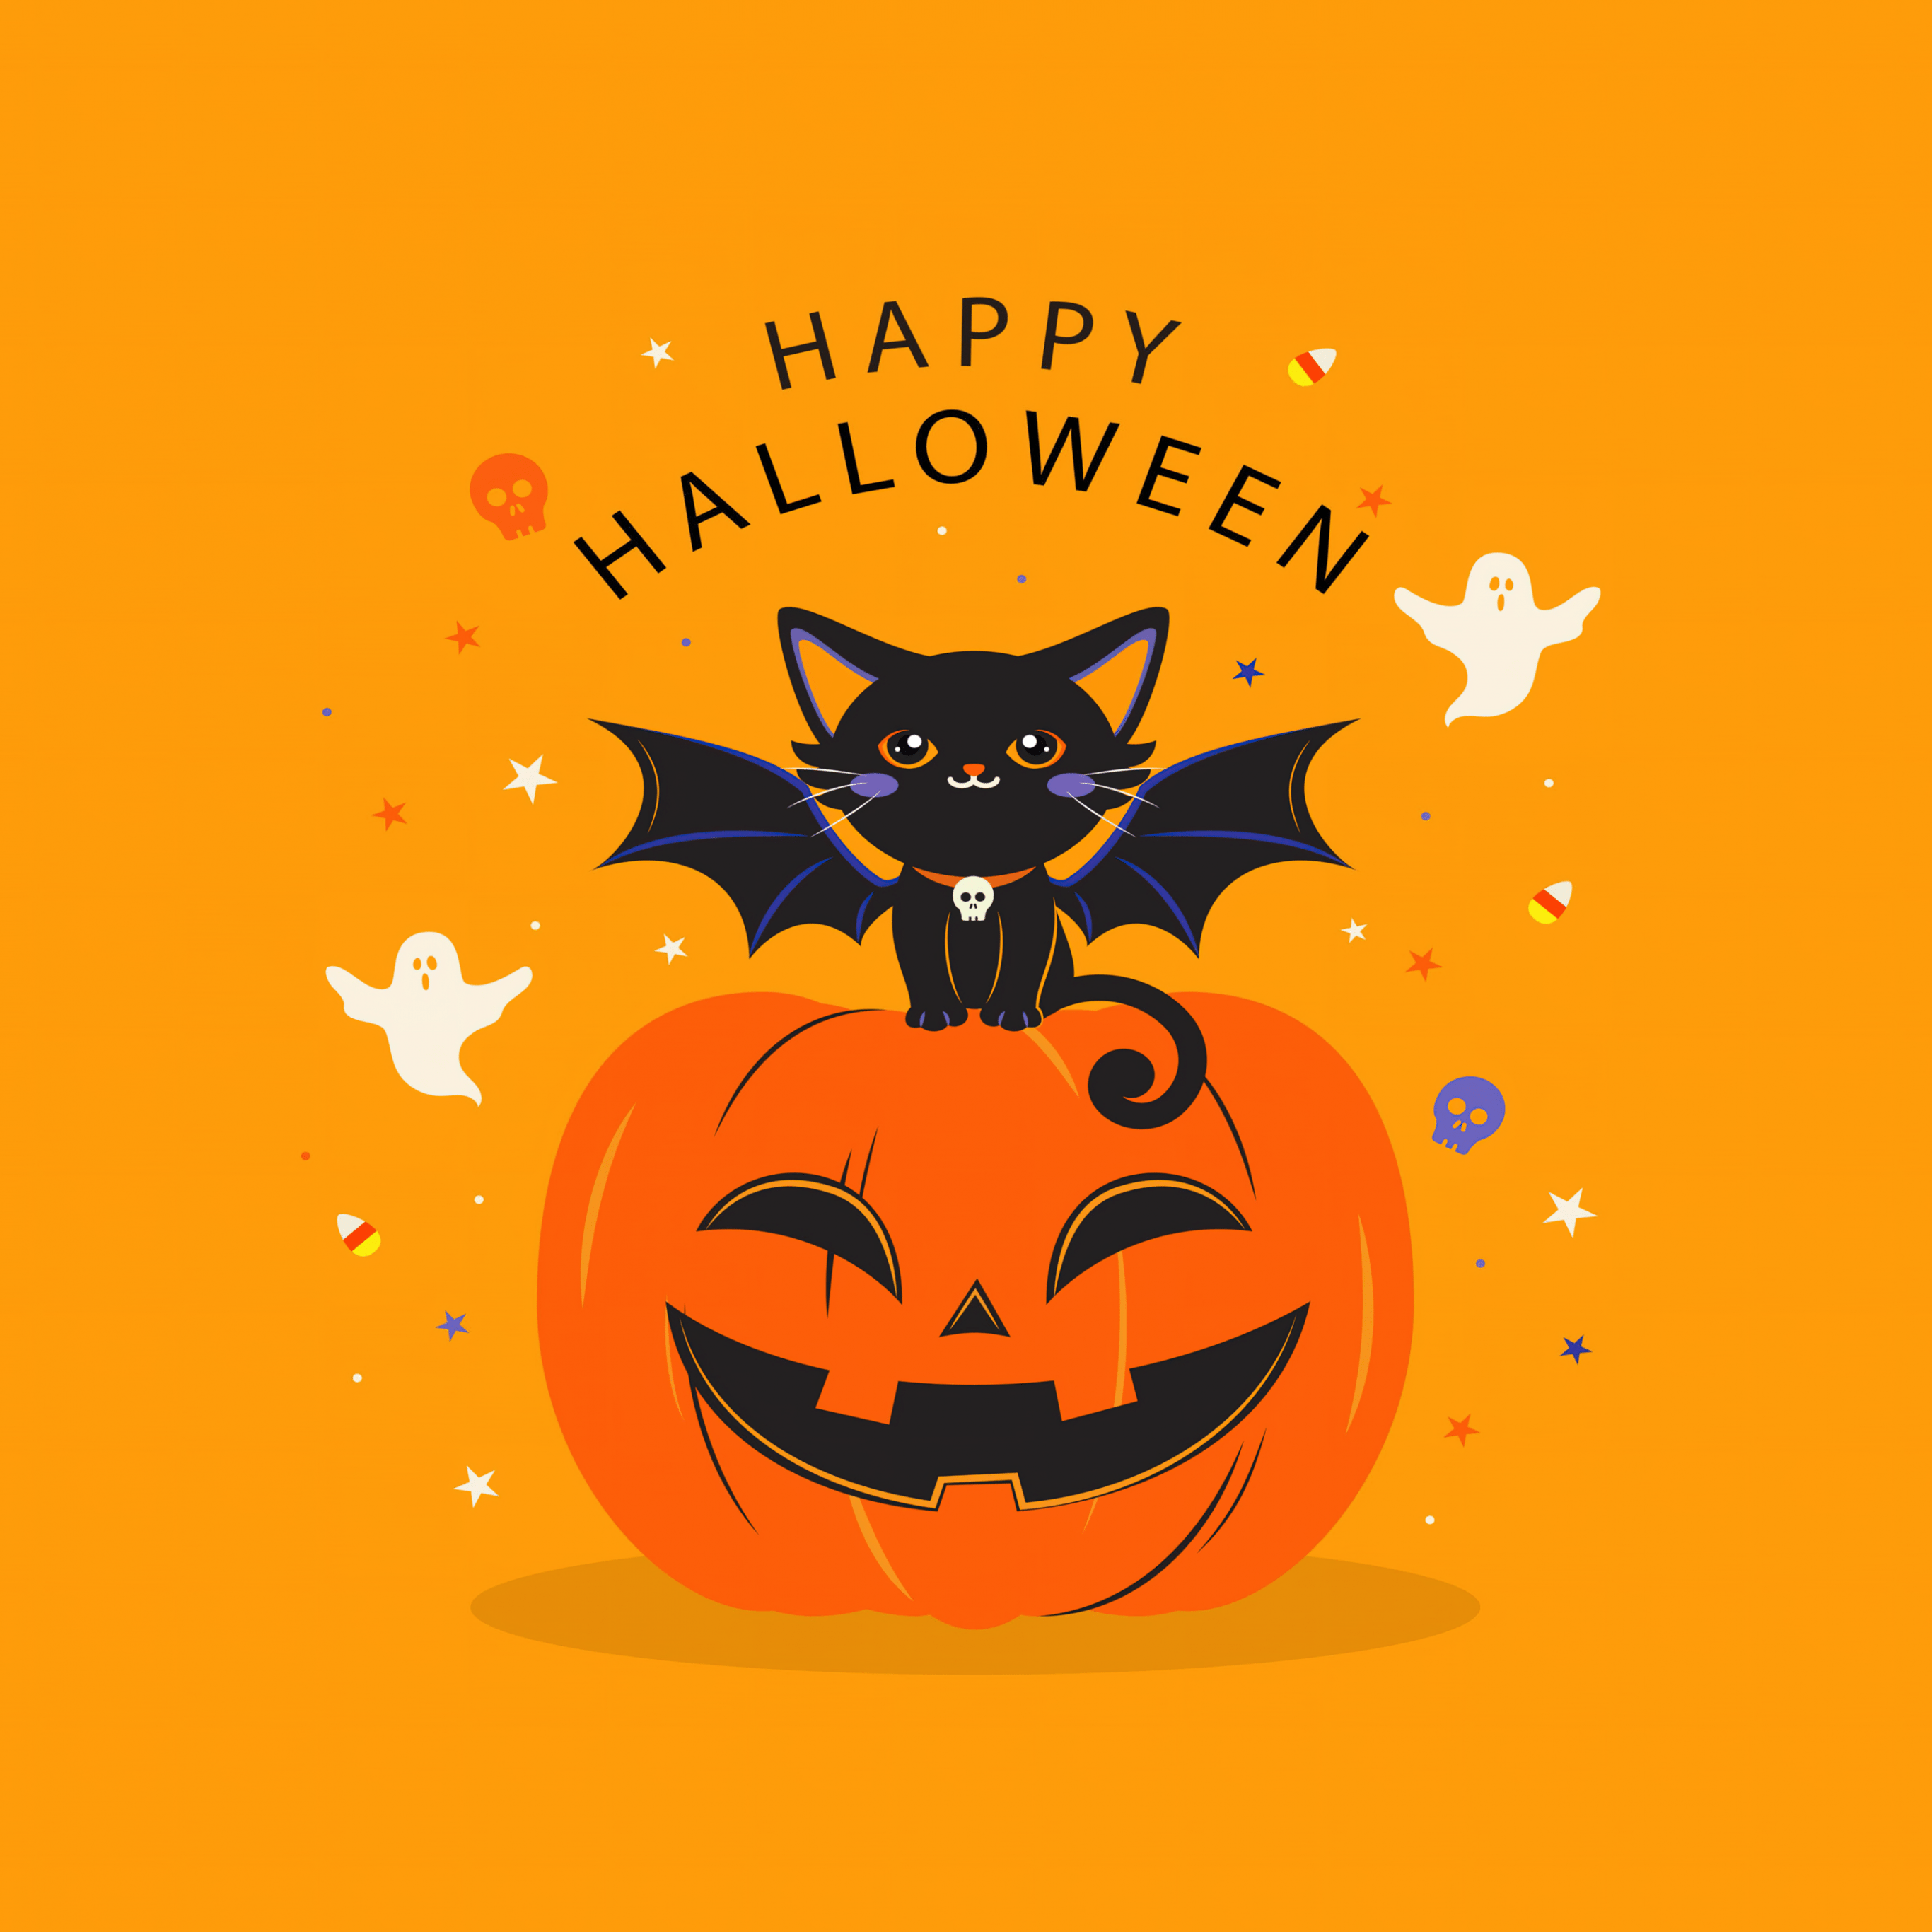 Happy Halloween Wallpaper 4K, Halloween Bats, Halloween Pumpkin